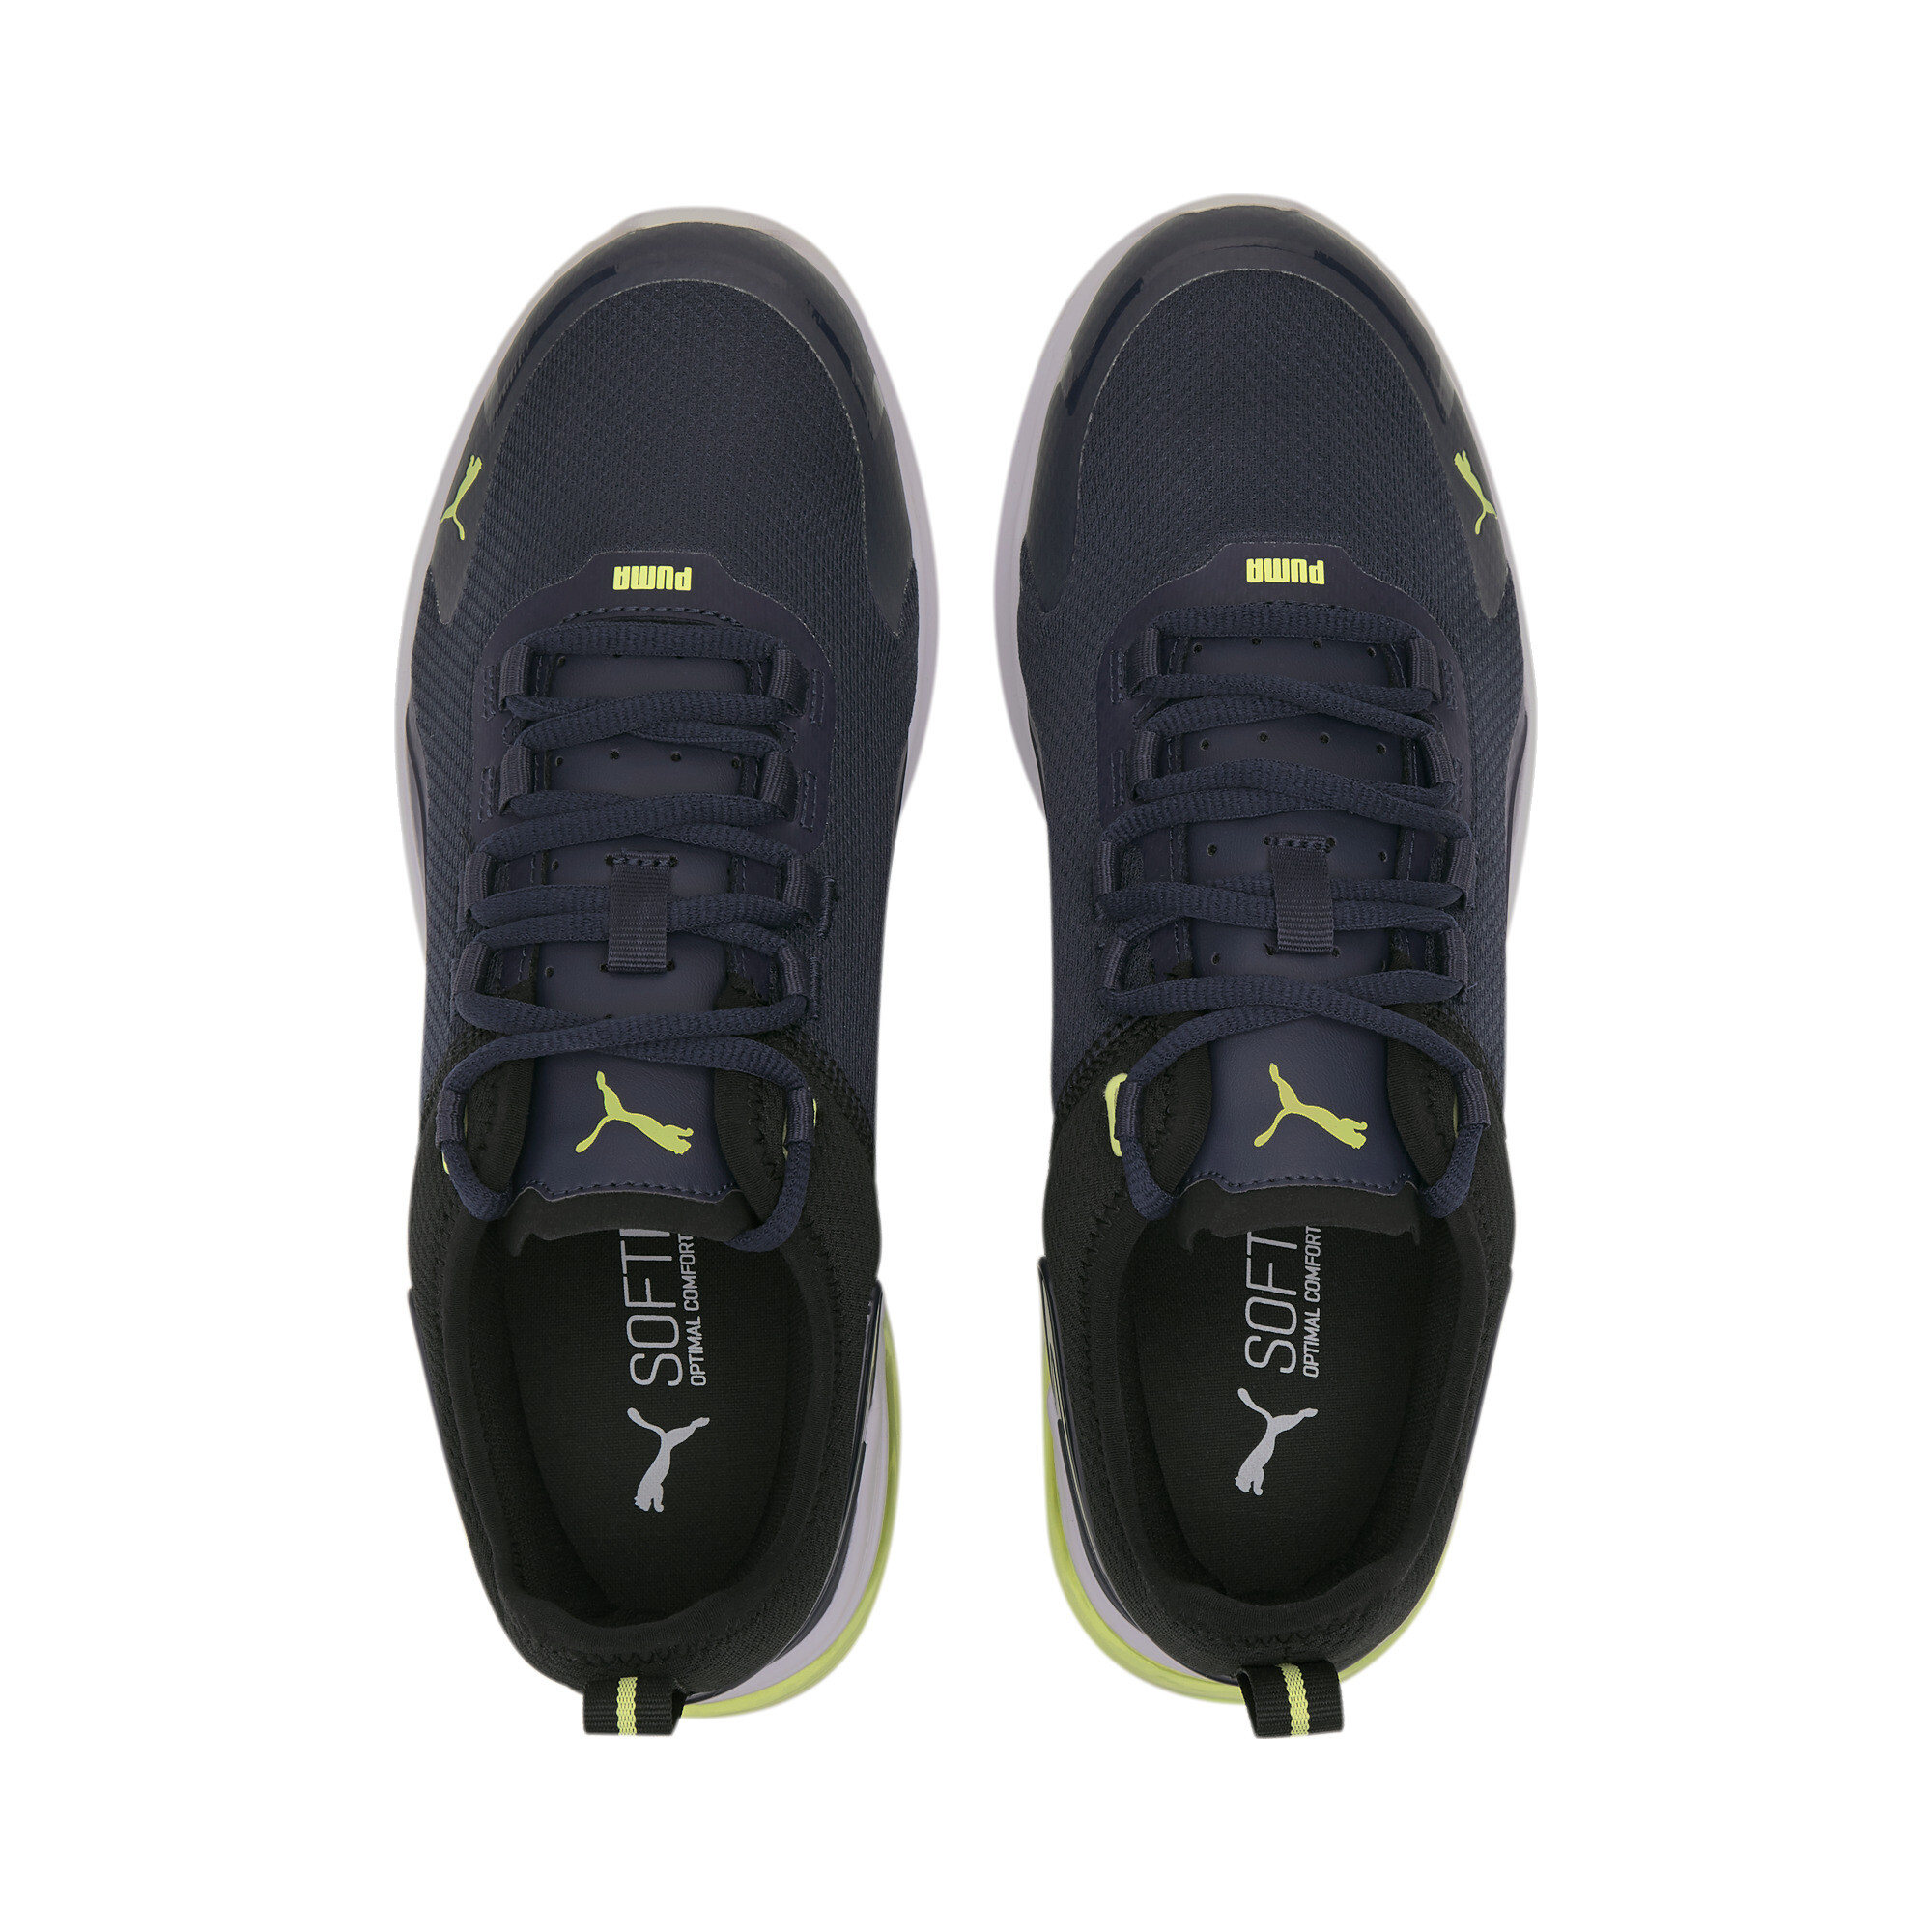 Indexbild 13 - PUMA Electron Street Era Sneaker Unisex Schuhe Basics Neu